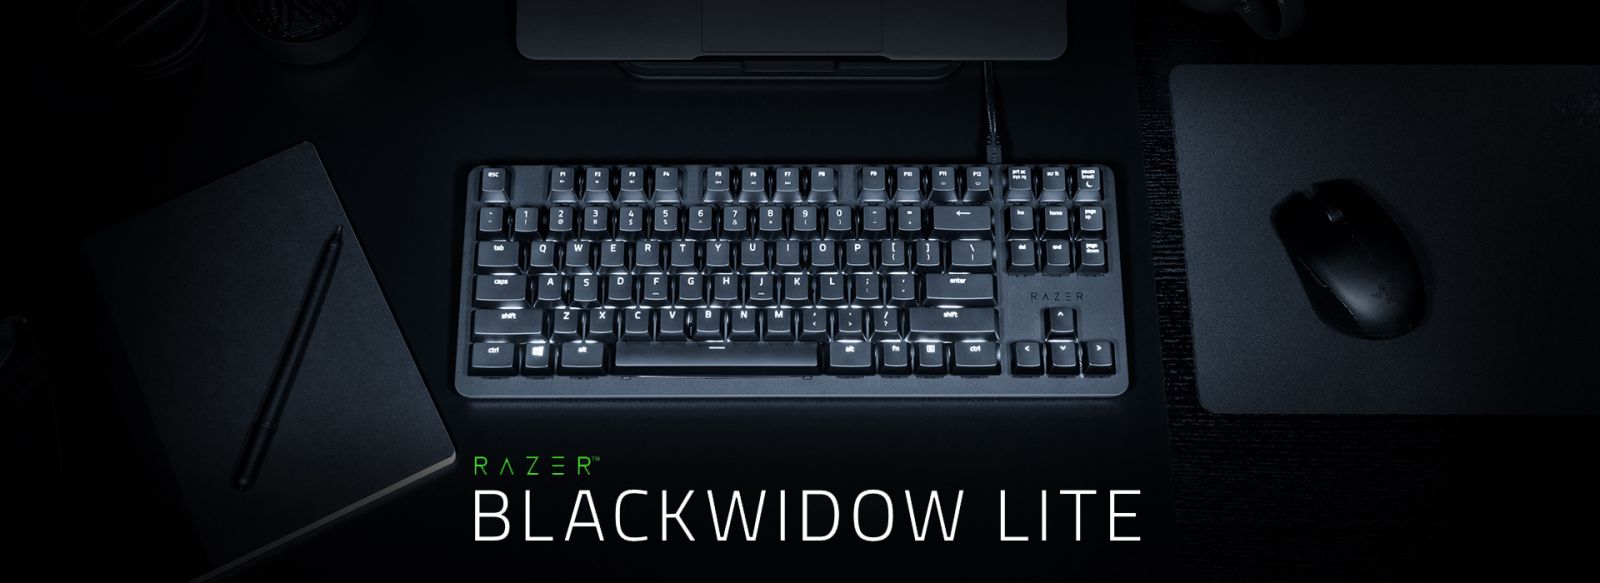 ขาย Razer Blackwidow Lite Mechanical Sw + O-Ring Silent Gaming Keyboard ราคา 2,990.00 บาท